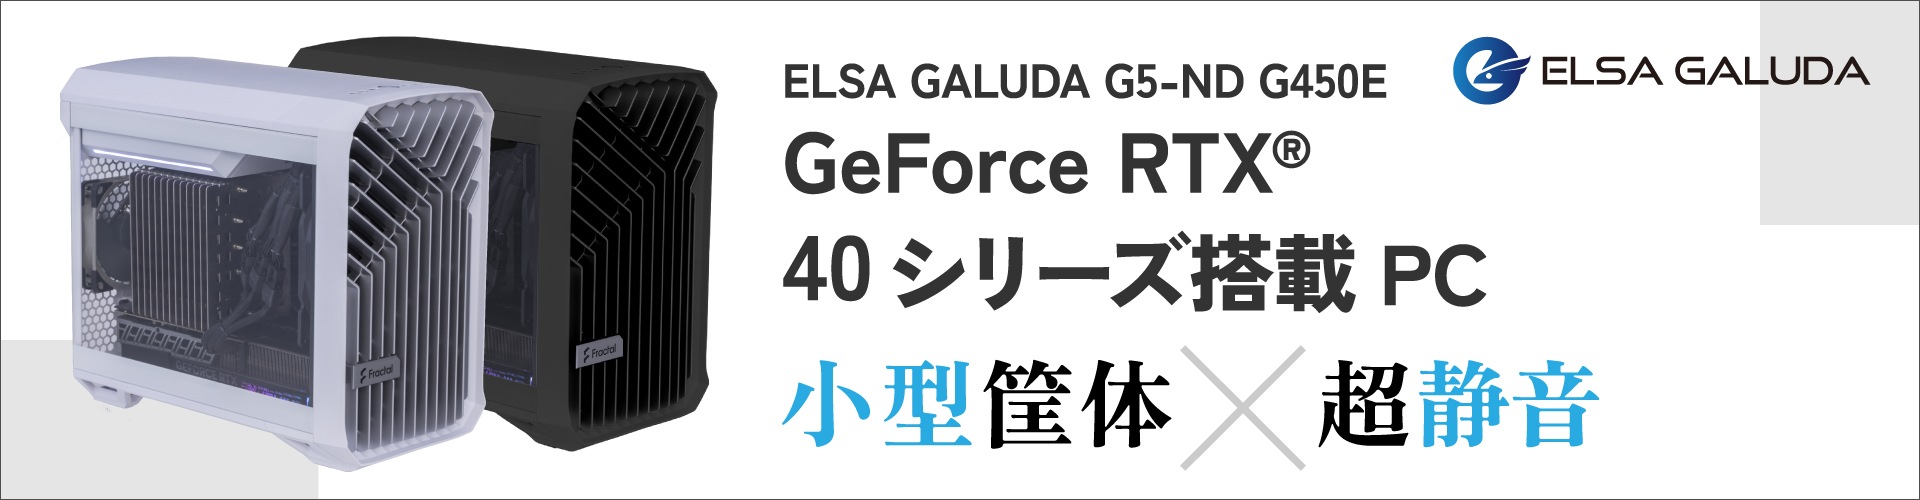 ELSA GALUDA G5-ND G450Eシリーズ